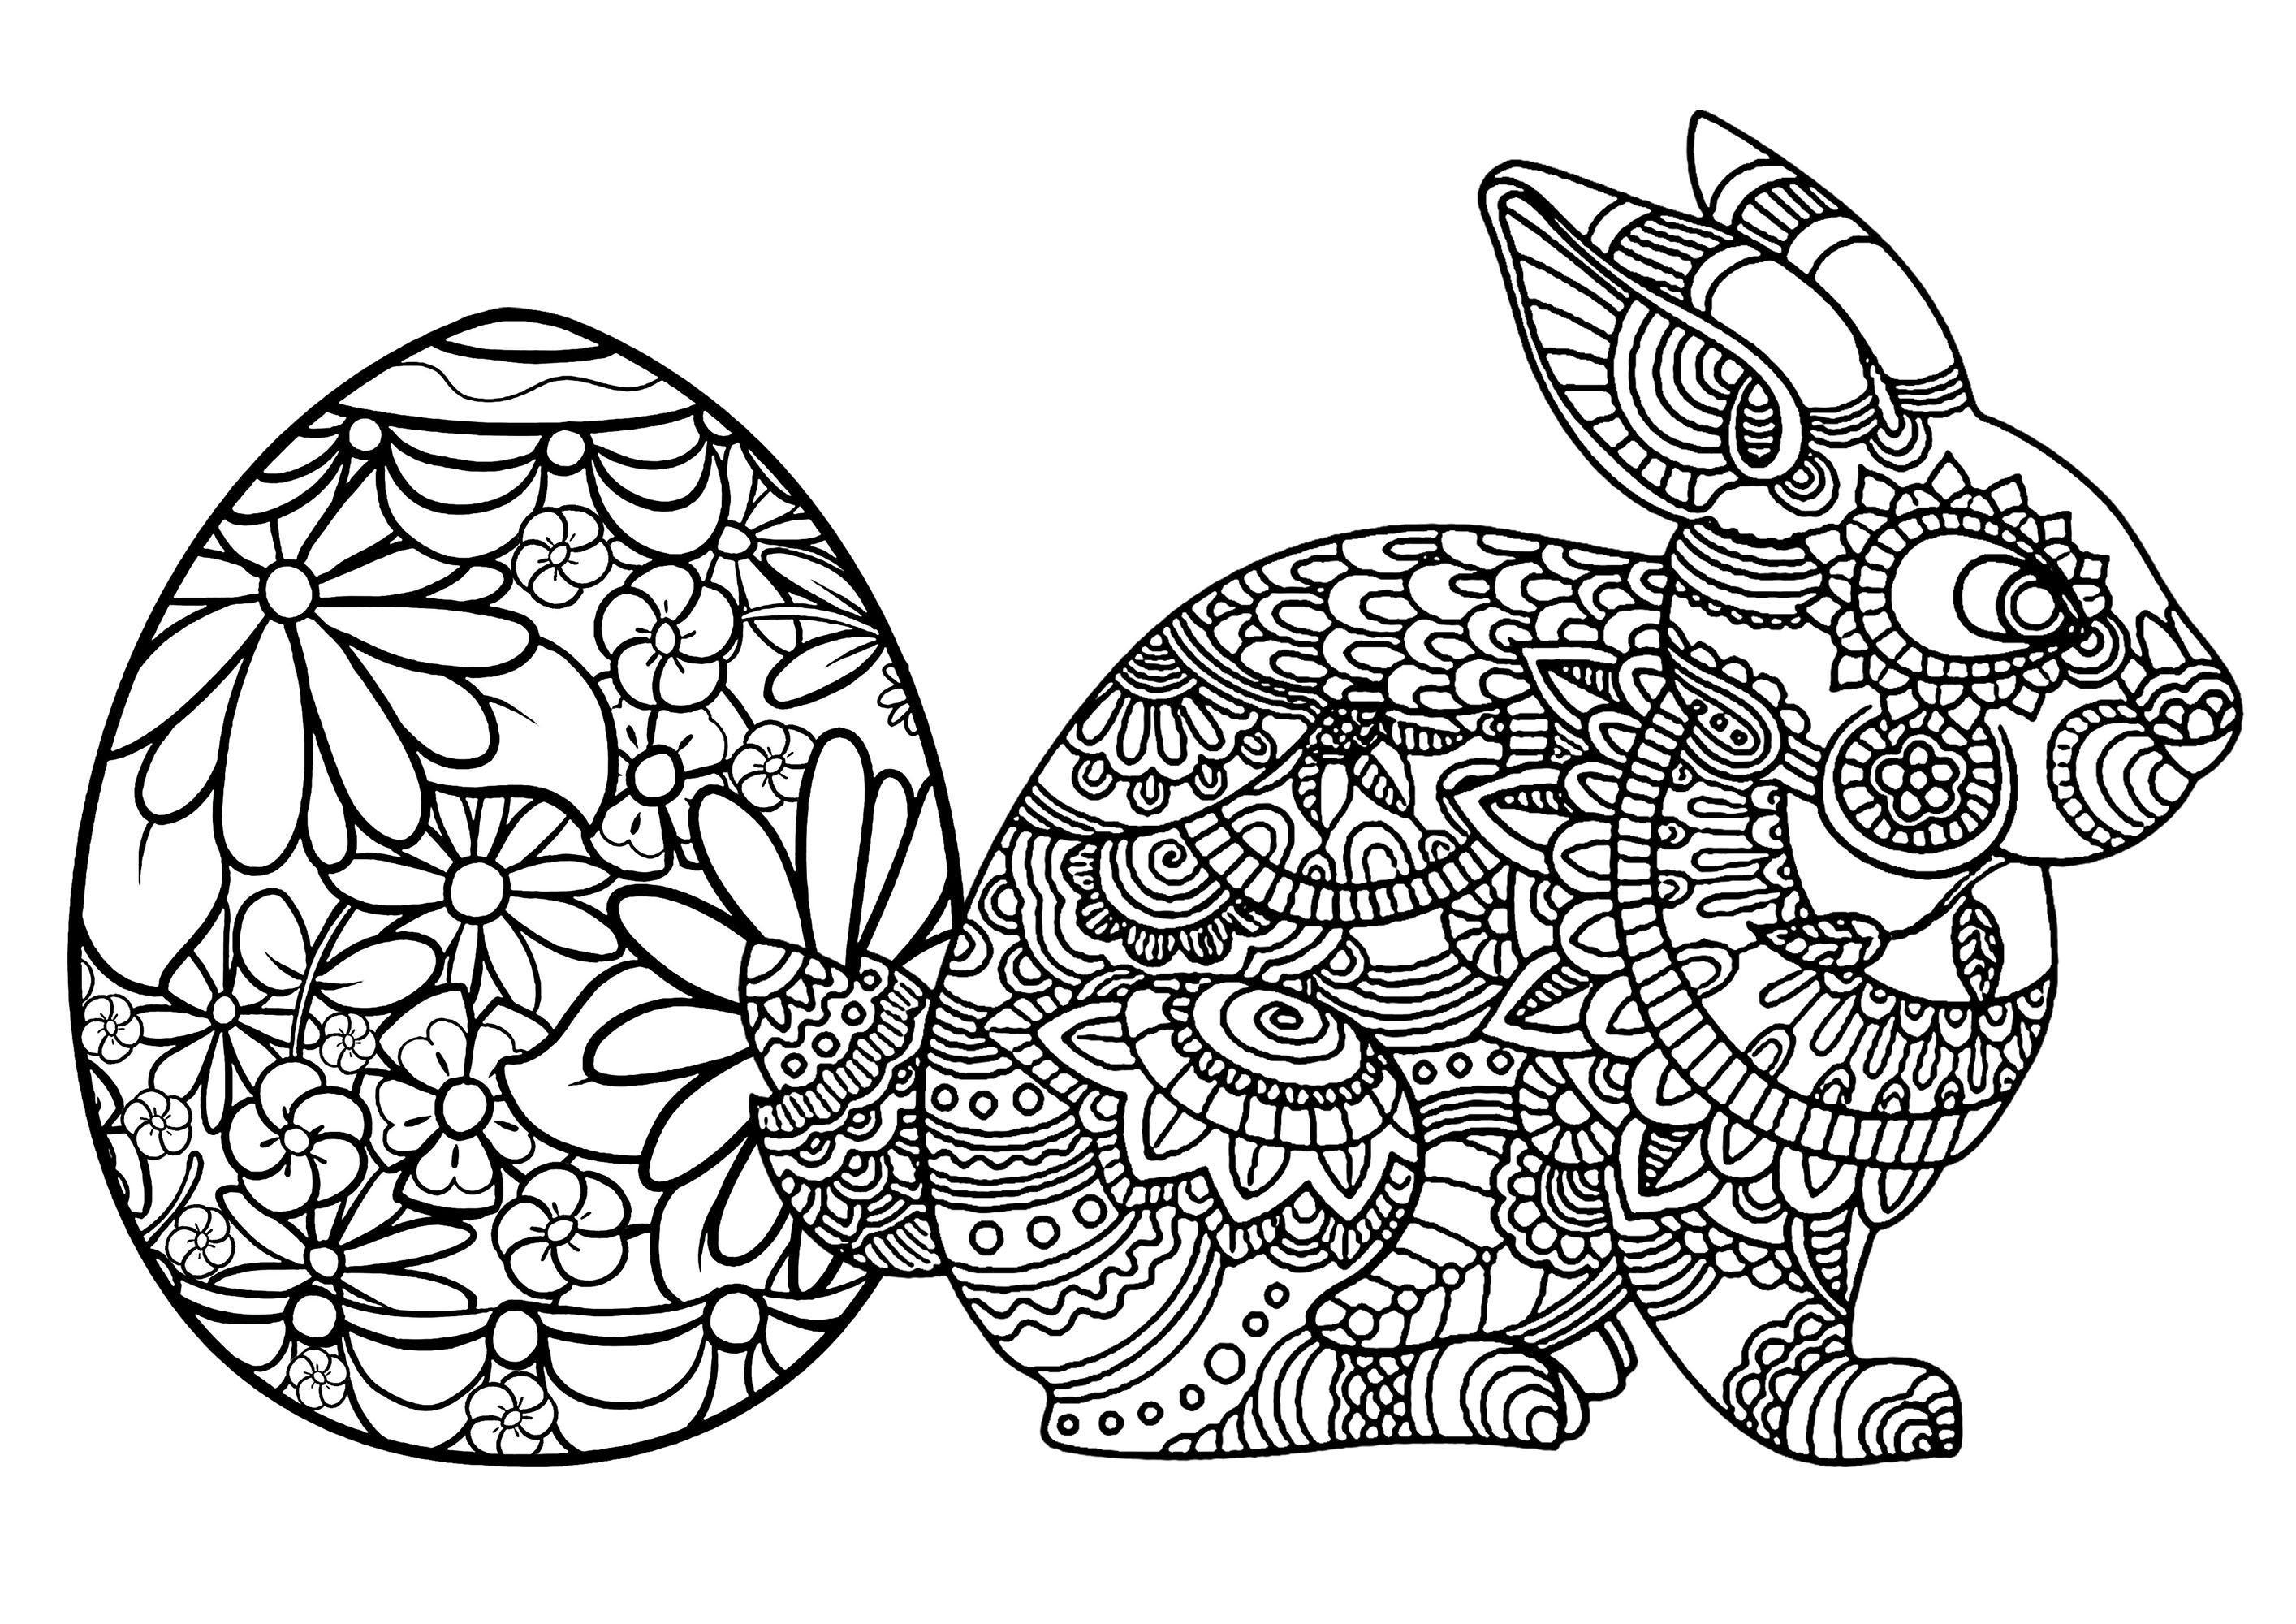 Ovo de Páscoa e coelho. Muitos pormenores para colorir nos dois temas desta bonita página para colorir